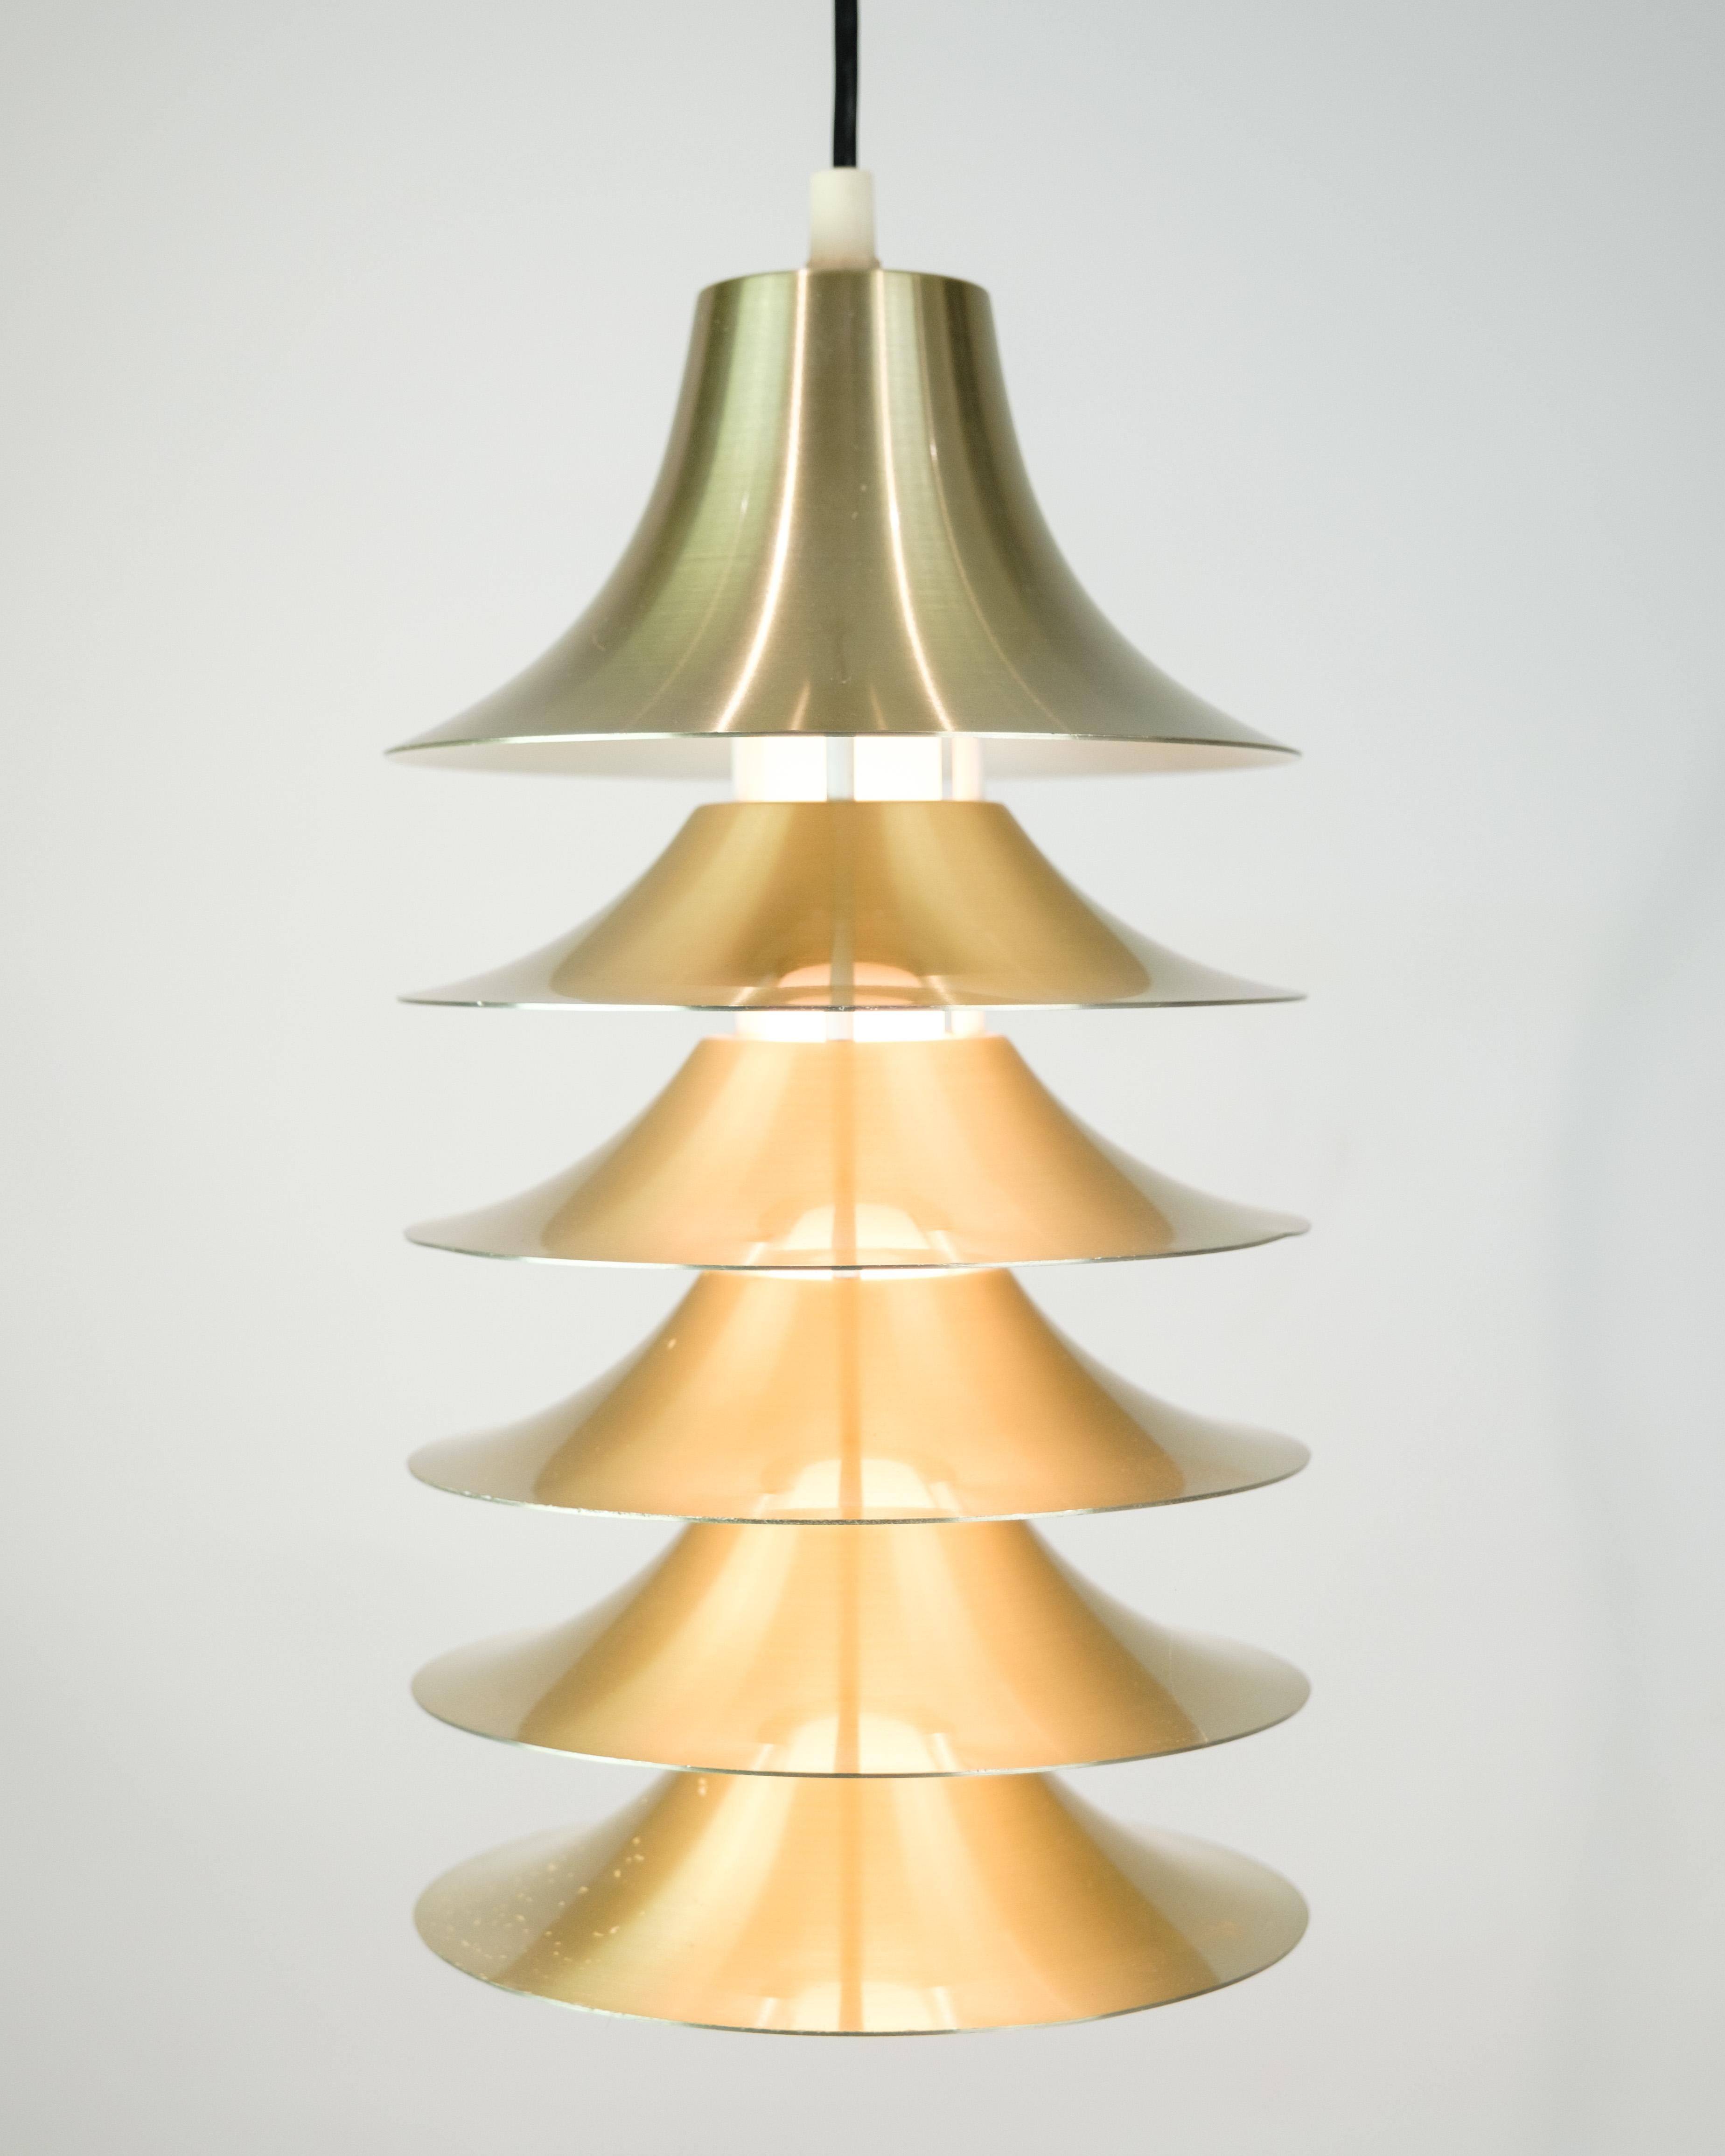 Aluminum Pendant Made In Aluminium, Danish Design From 1970s For Sale